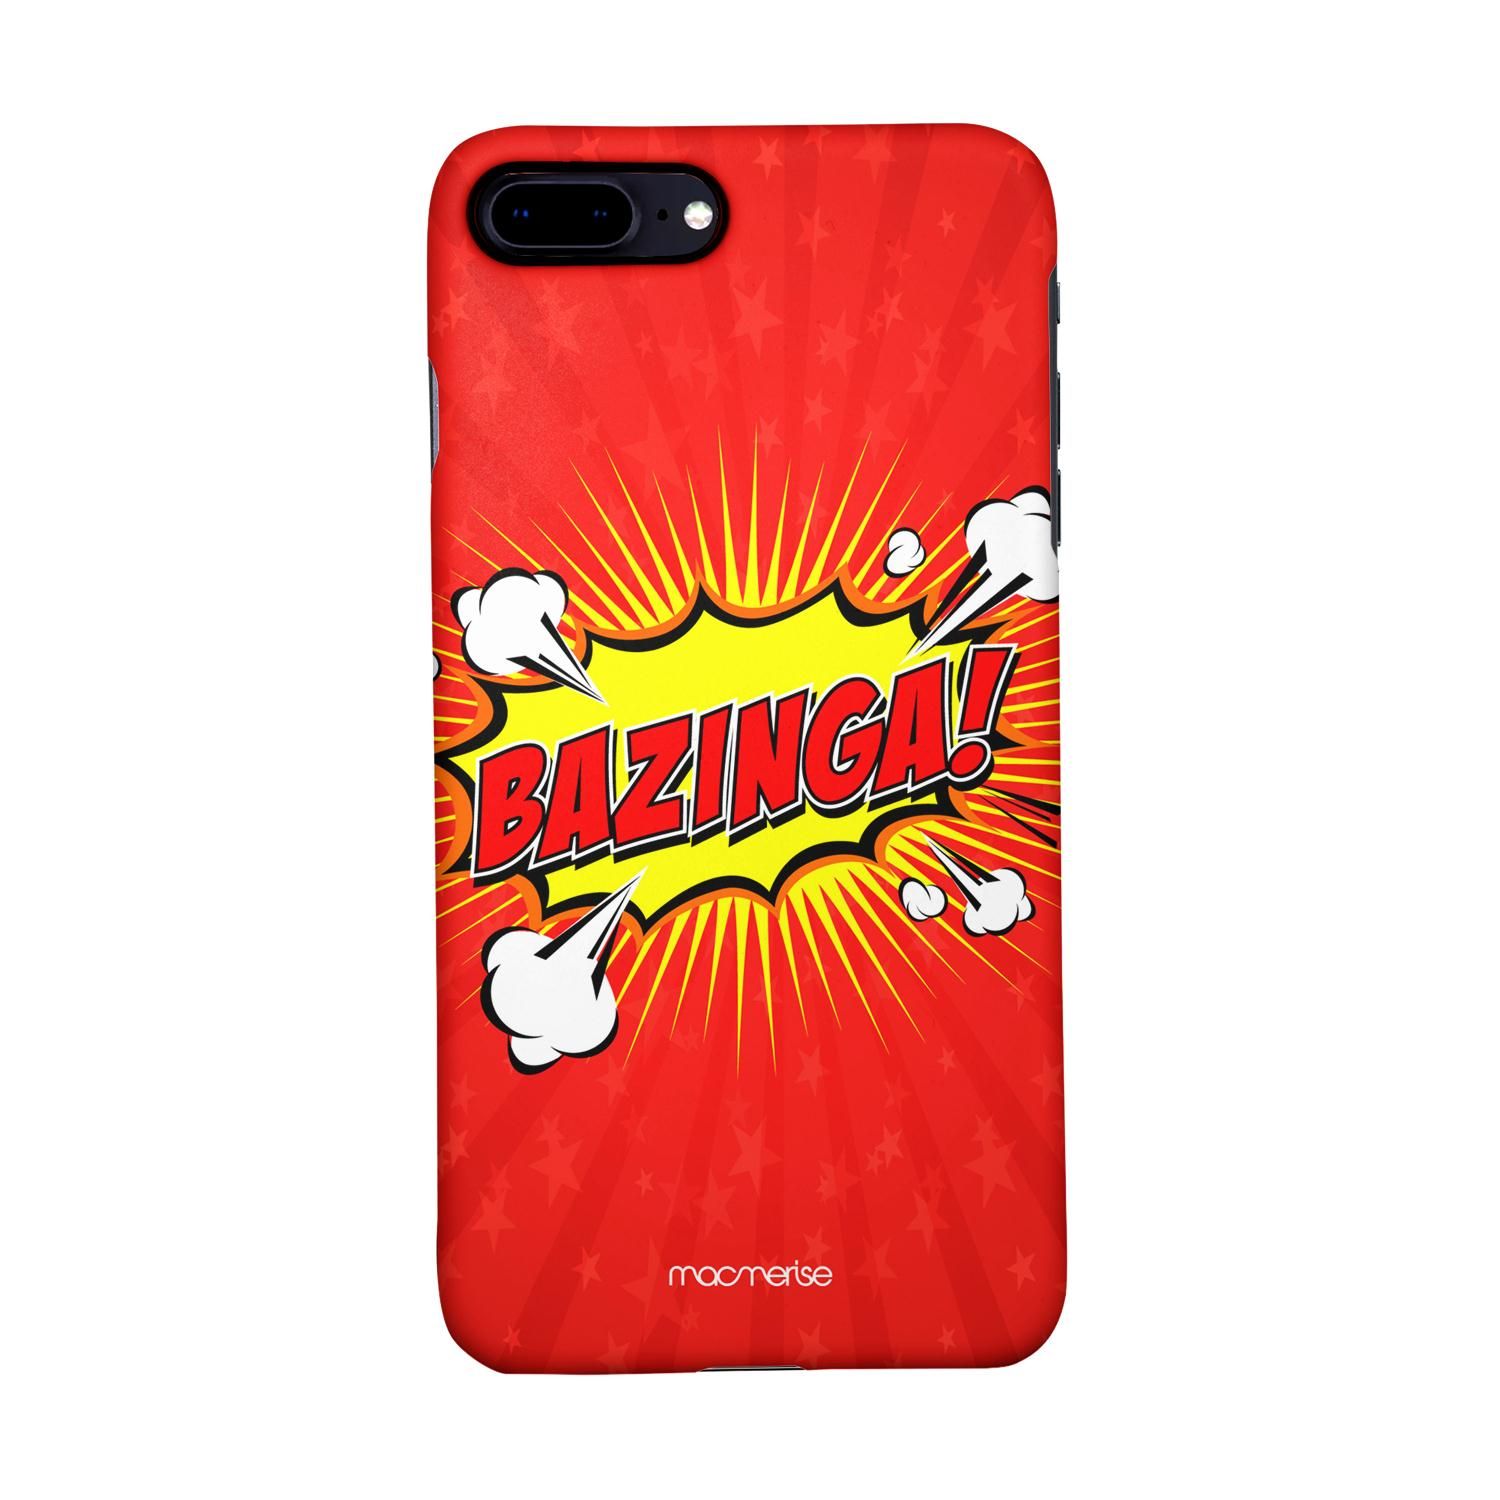 Bazinga - Sleek Phone Case for iPhone 8 Plus